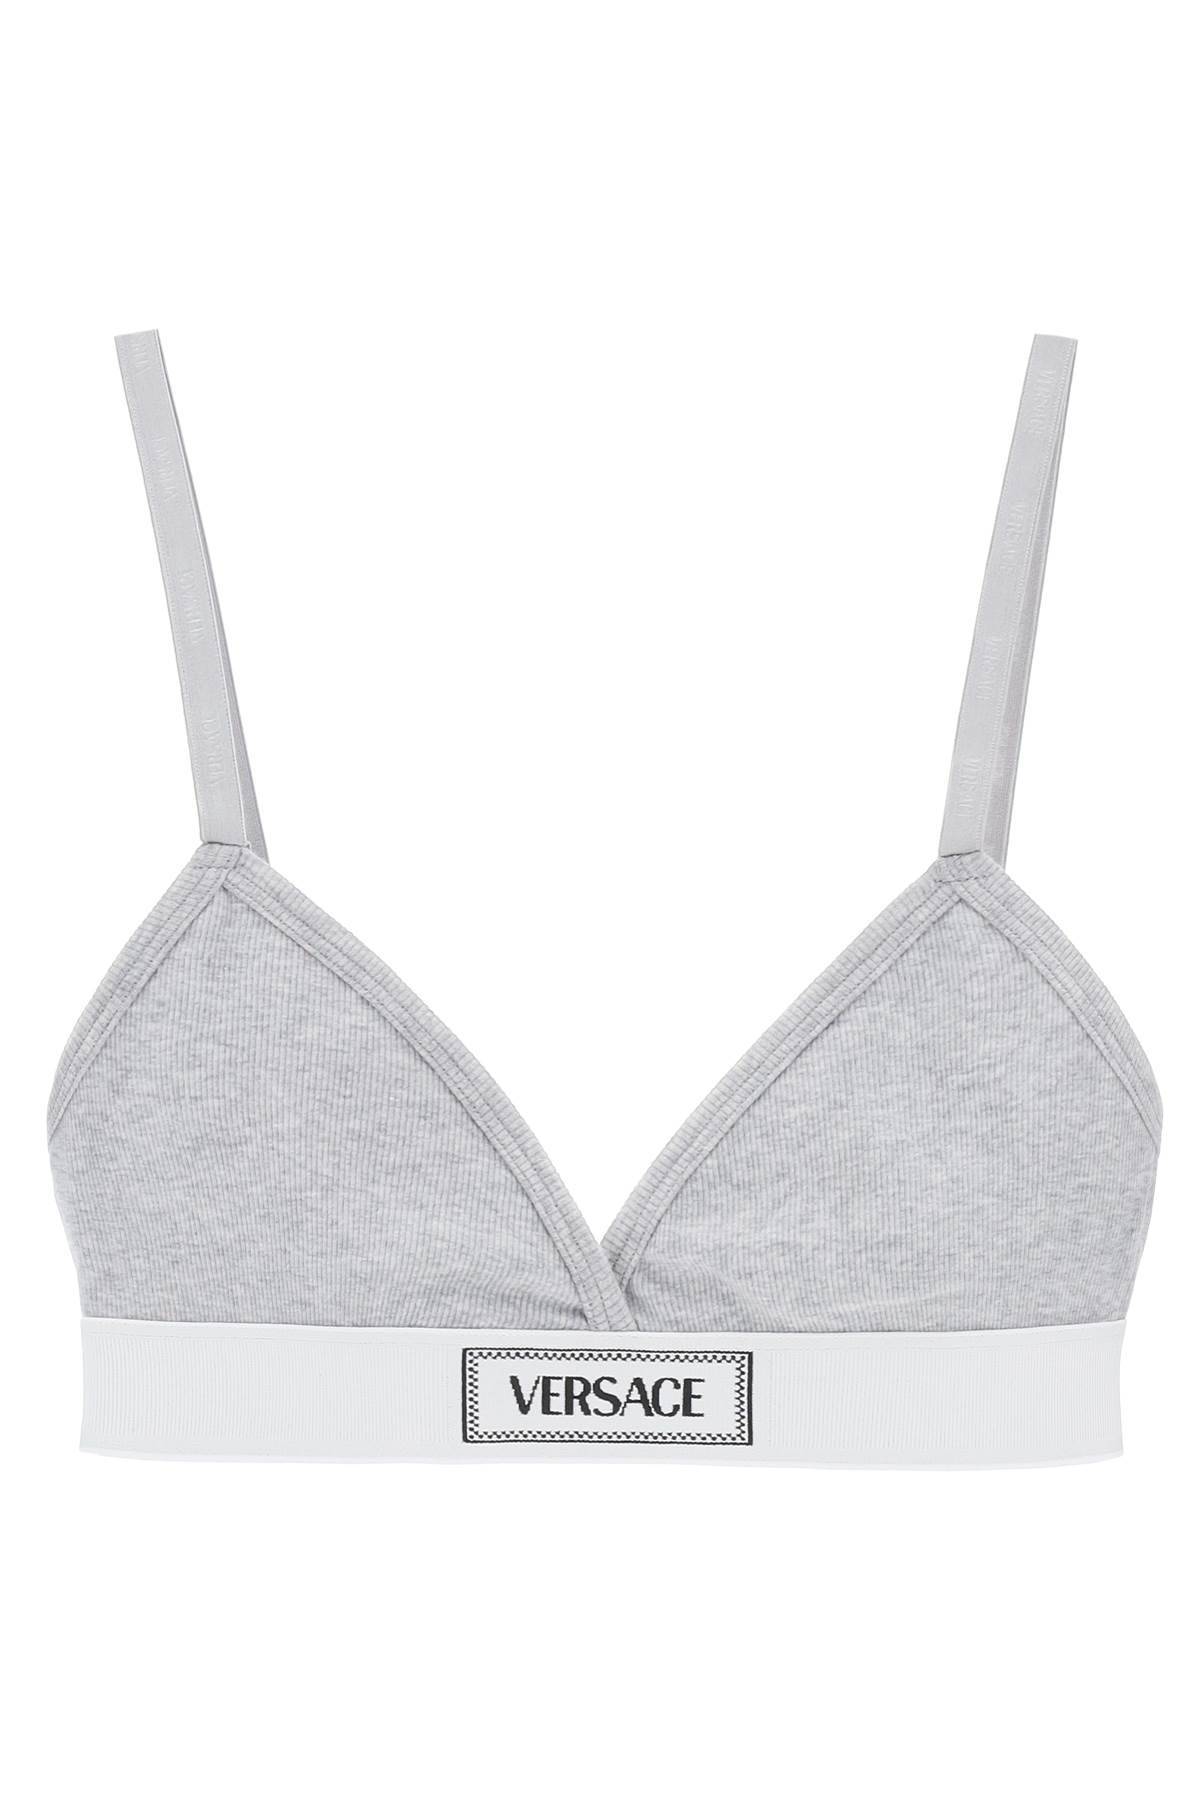 Versace '90s Logo Ribbed Bralette In Gray